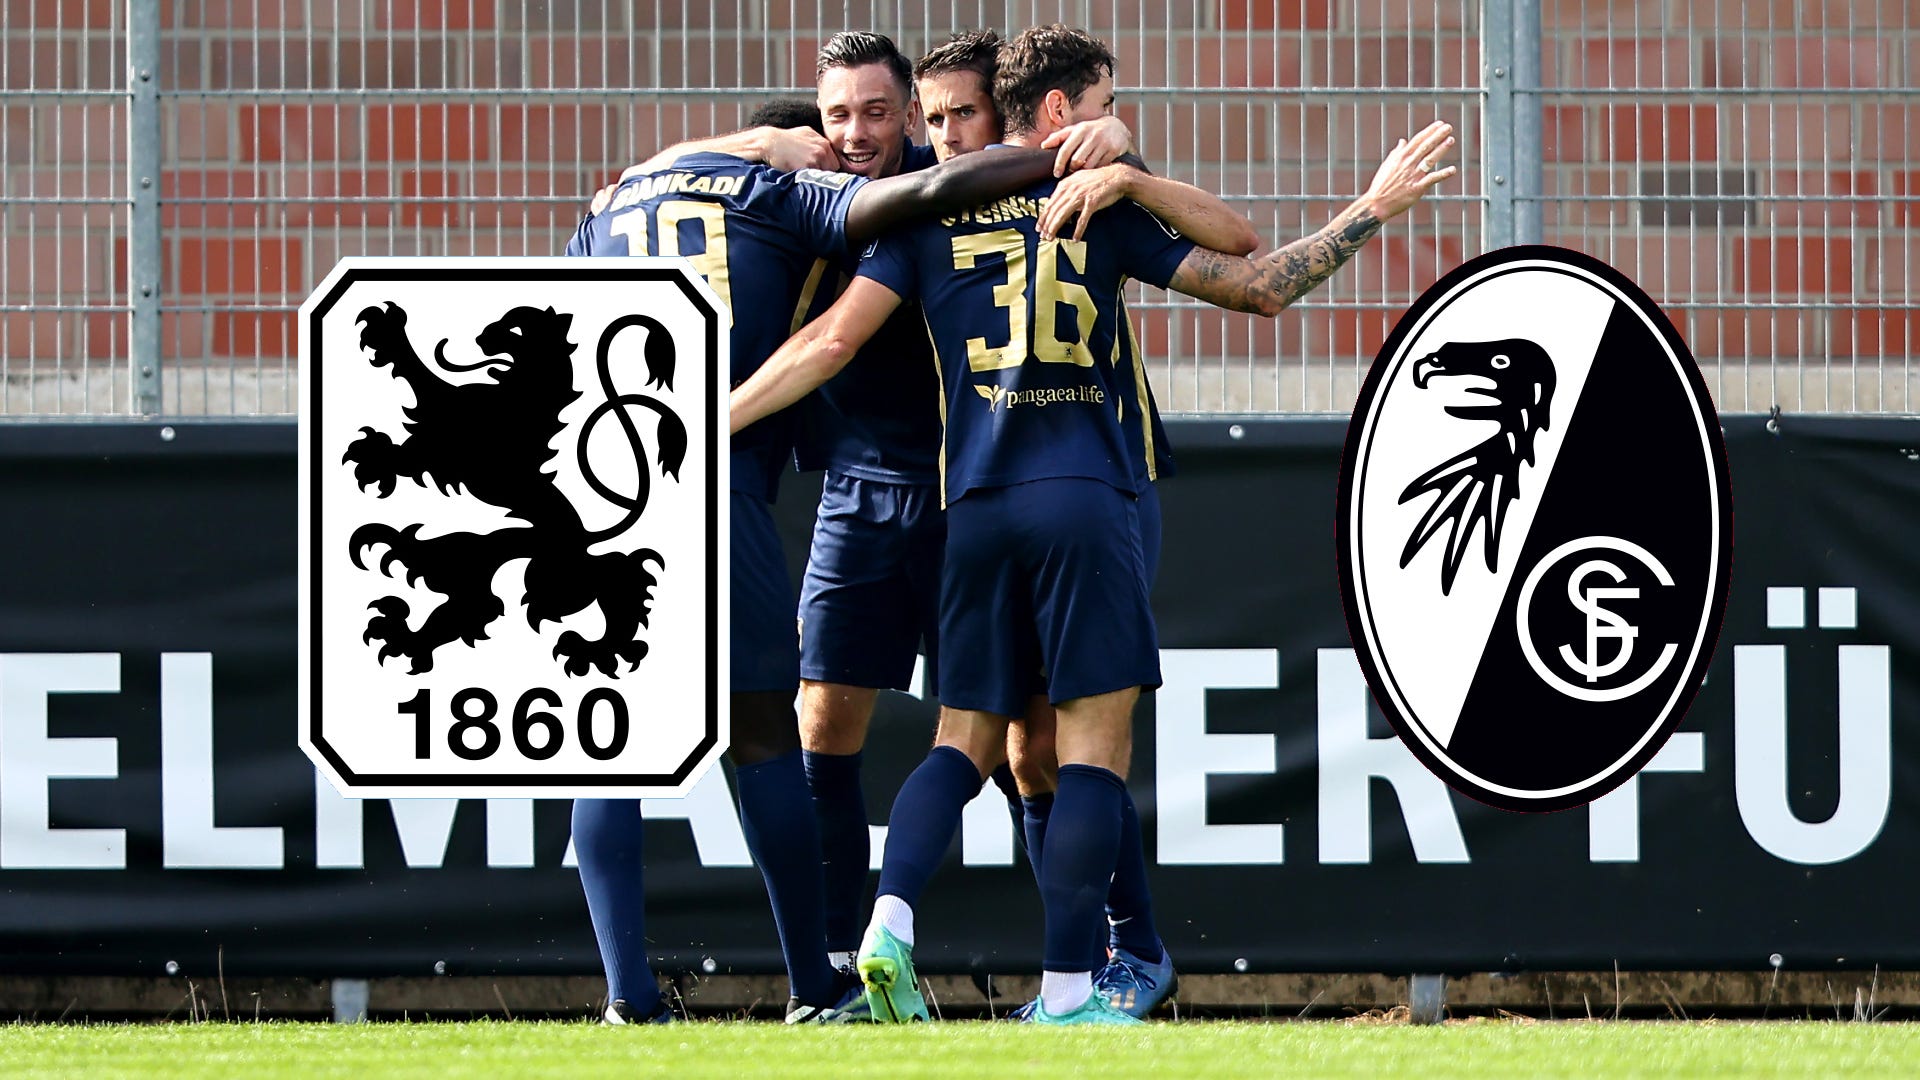 3. Liga: 1860 München erkämpft sich Sieg gegen Freiburg II